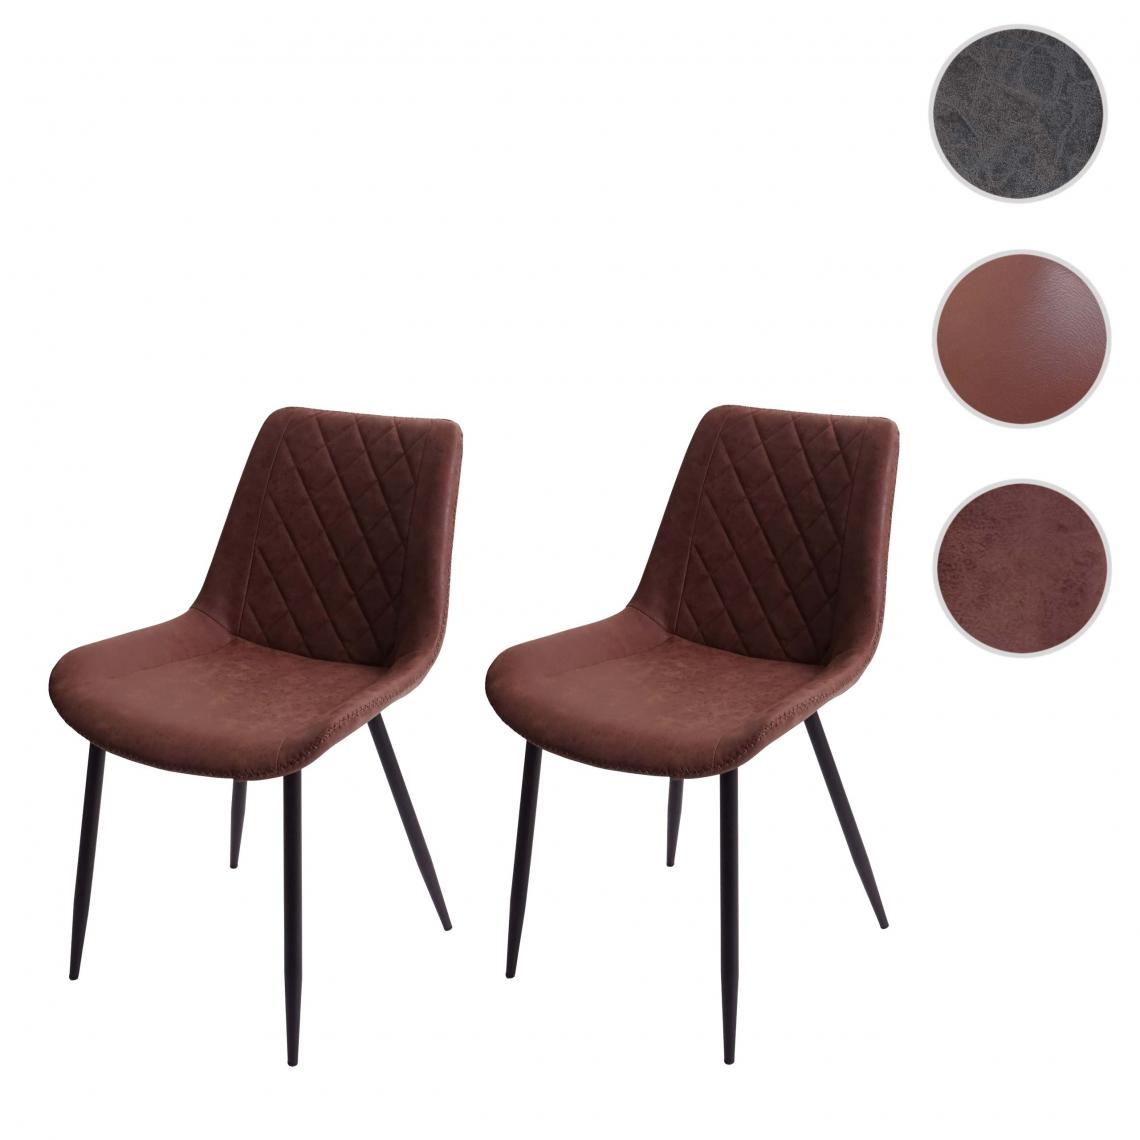 Mendler - 2x chaise de salle à manger HWC-E56, chaise de cuisine, vintage ~ tissu/textile imitation daim marron - Chaises